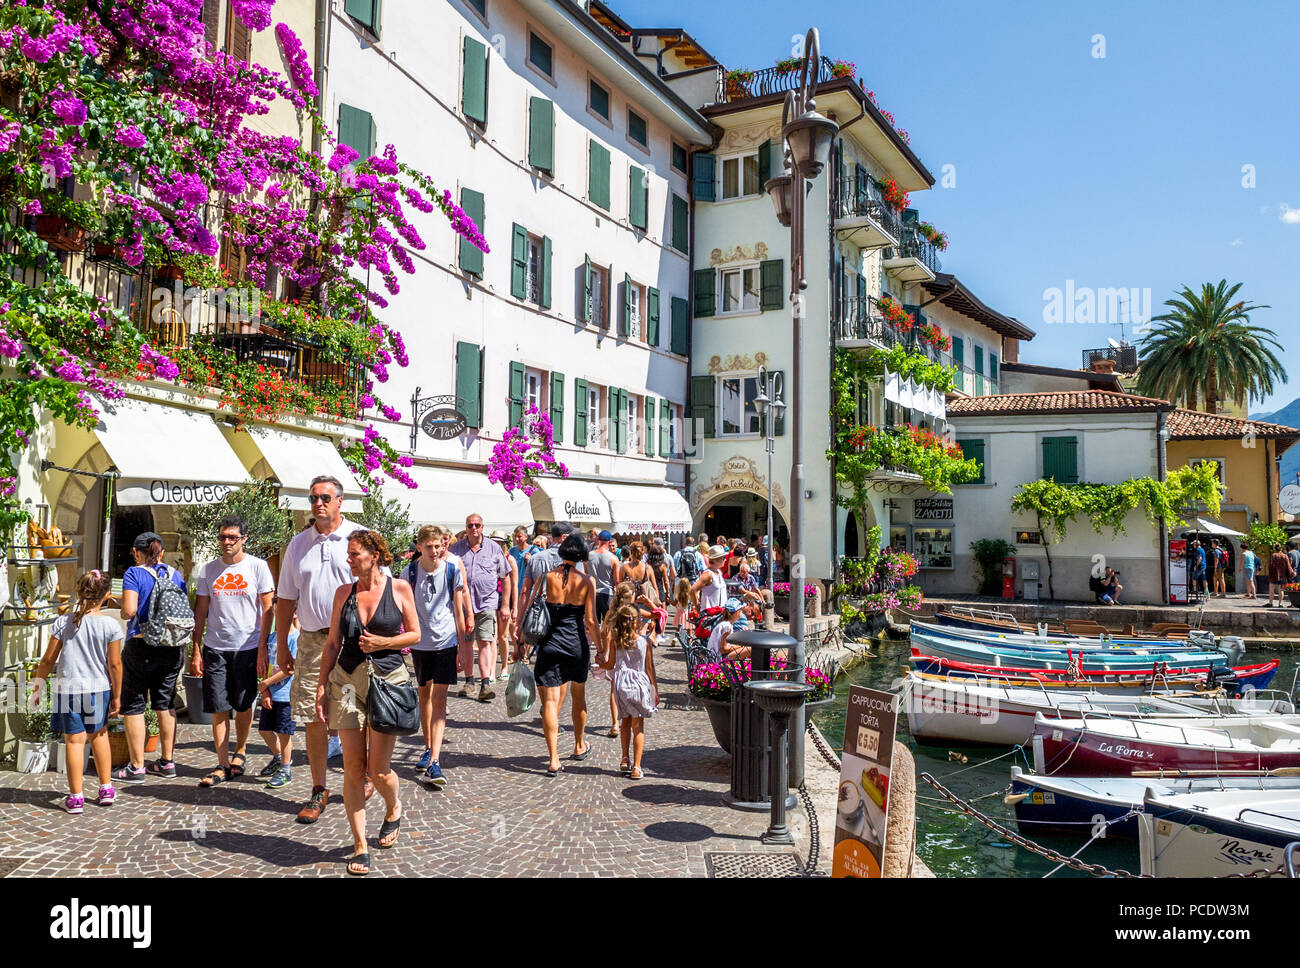 La ciudad italiana de Limone sul Garda en la orilla del Lago de Garda, Foto de stock